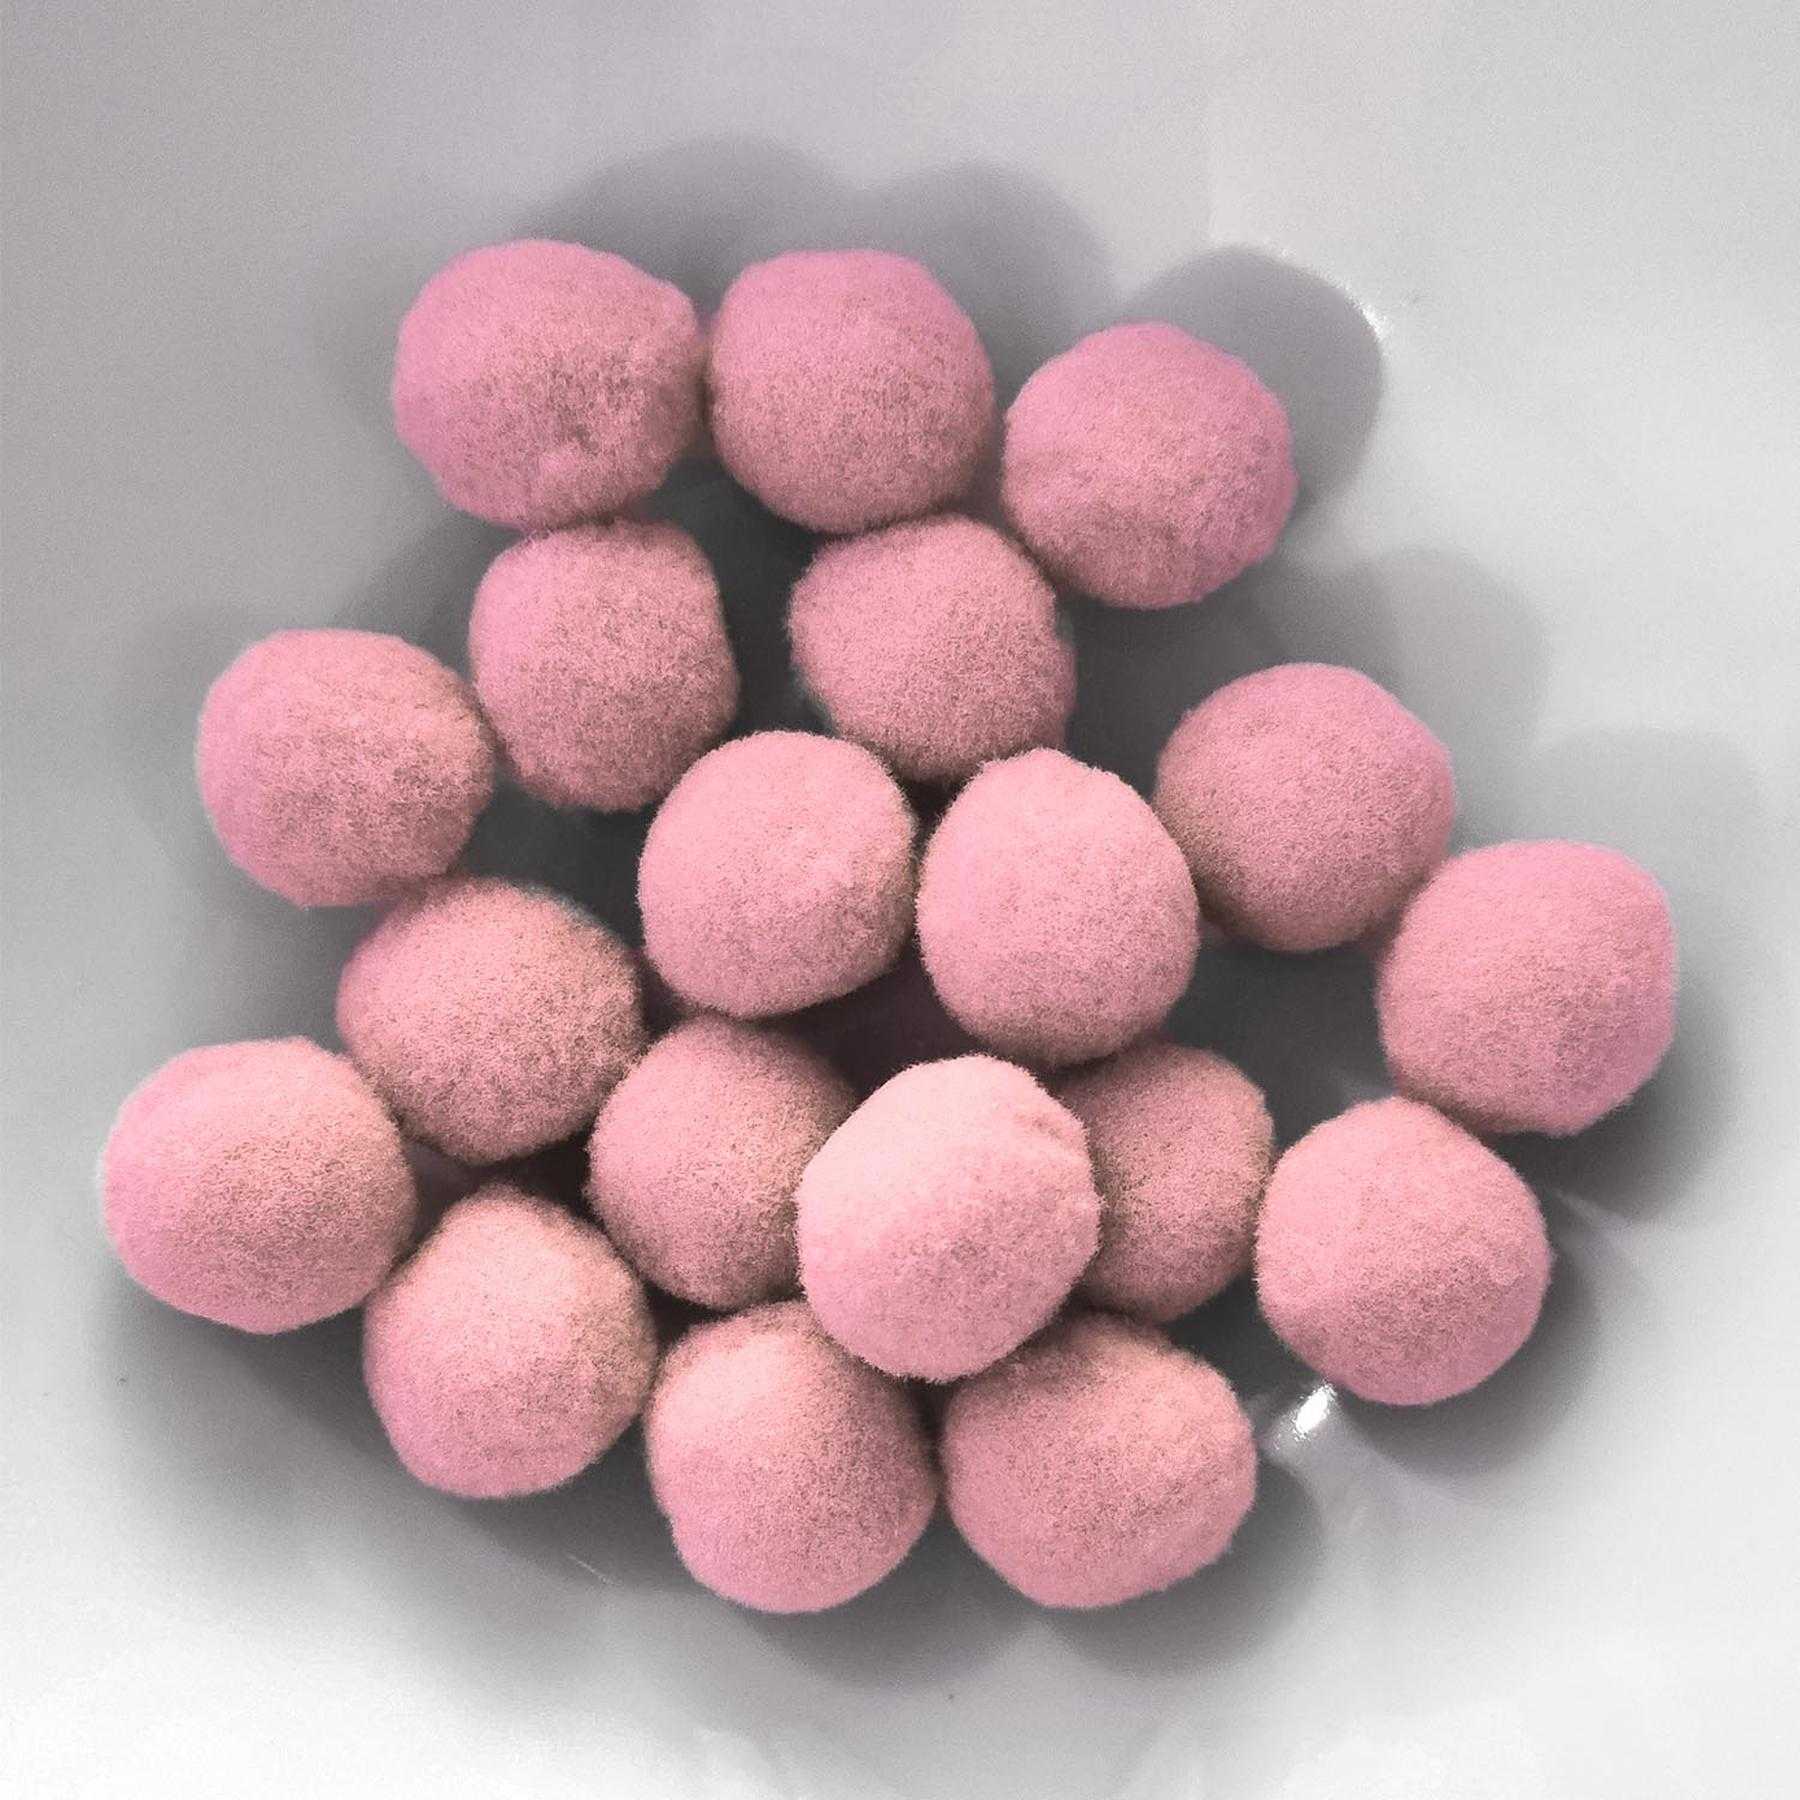 PomPon / Bälle aus Baumwolle - 12 mm / 40er Set - Rosa hell